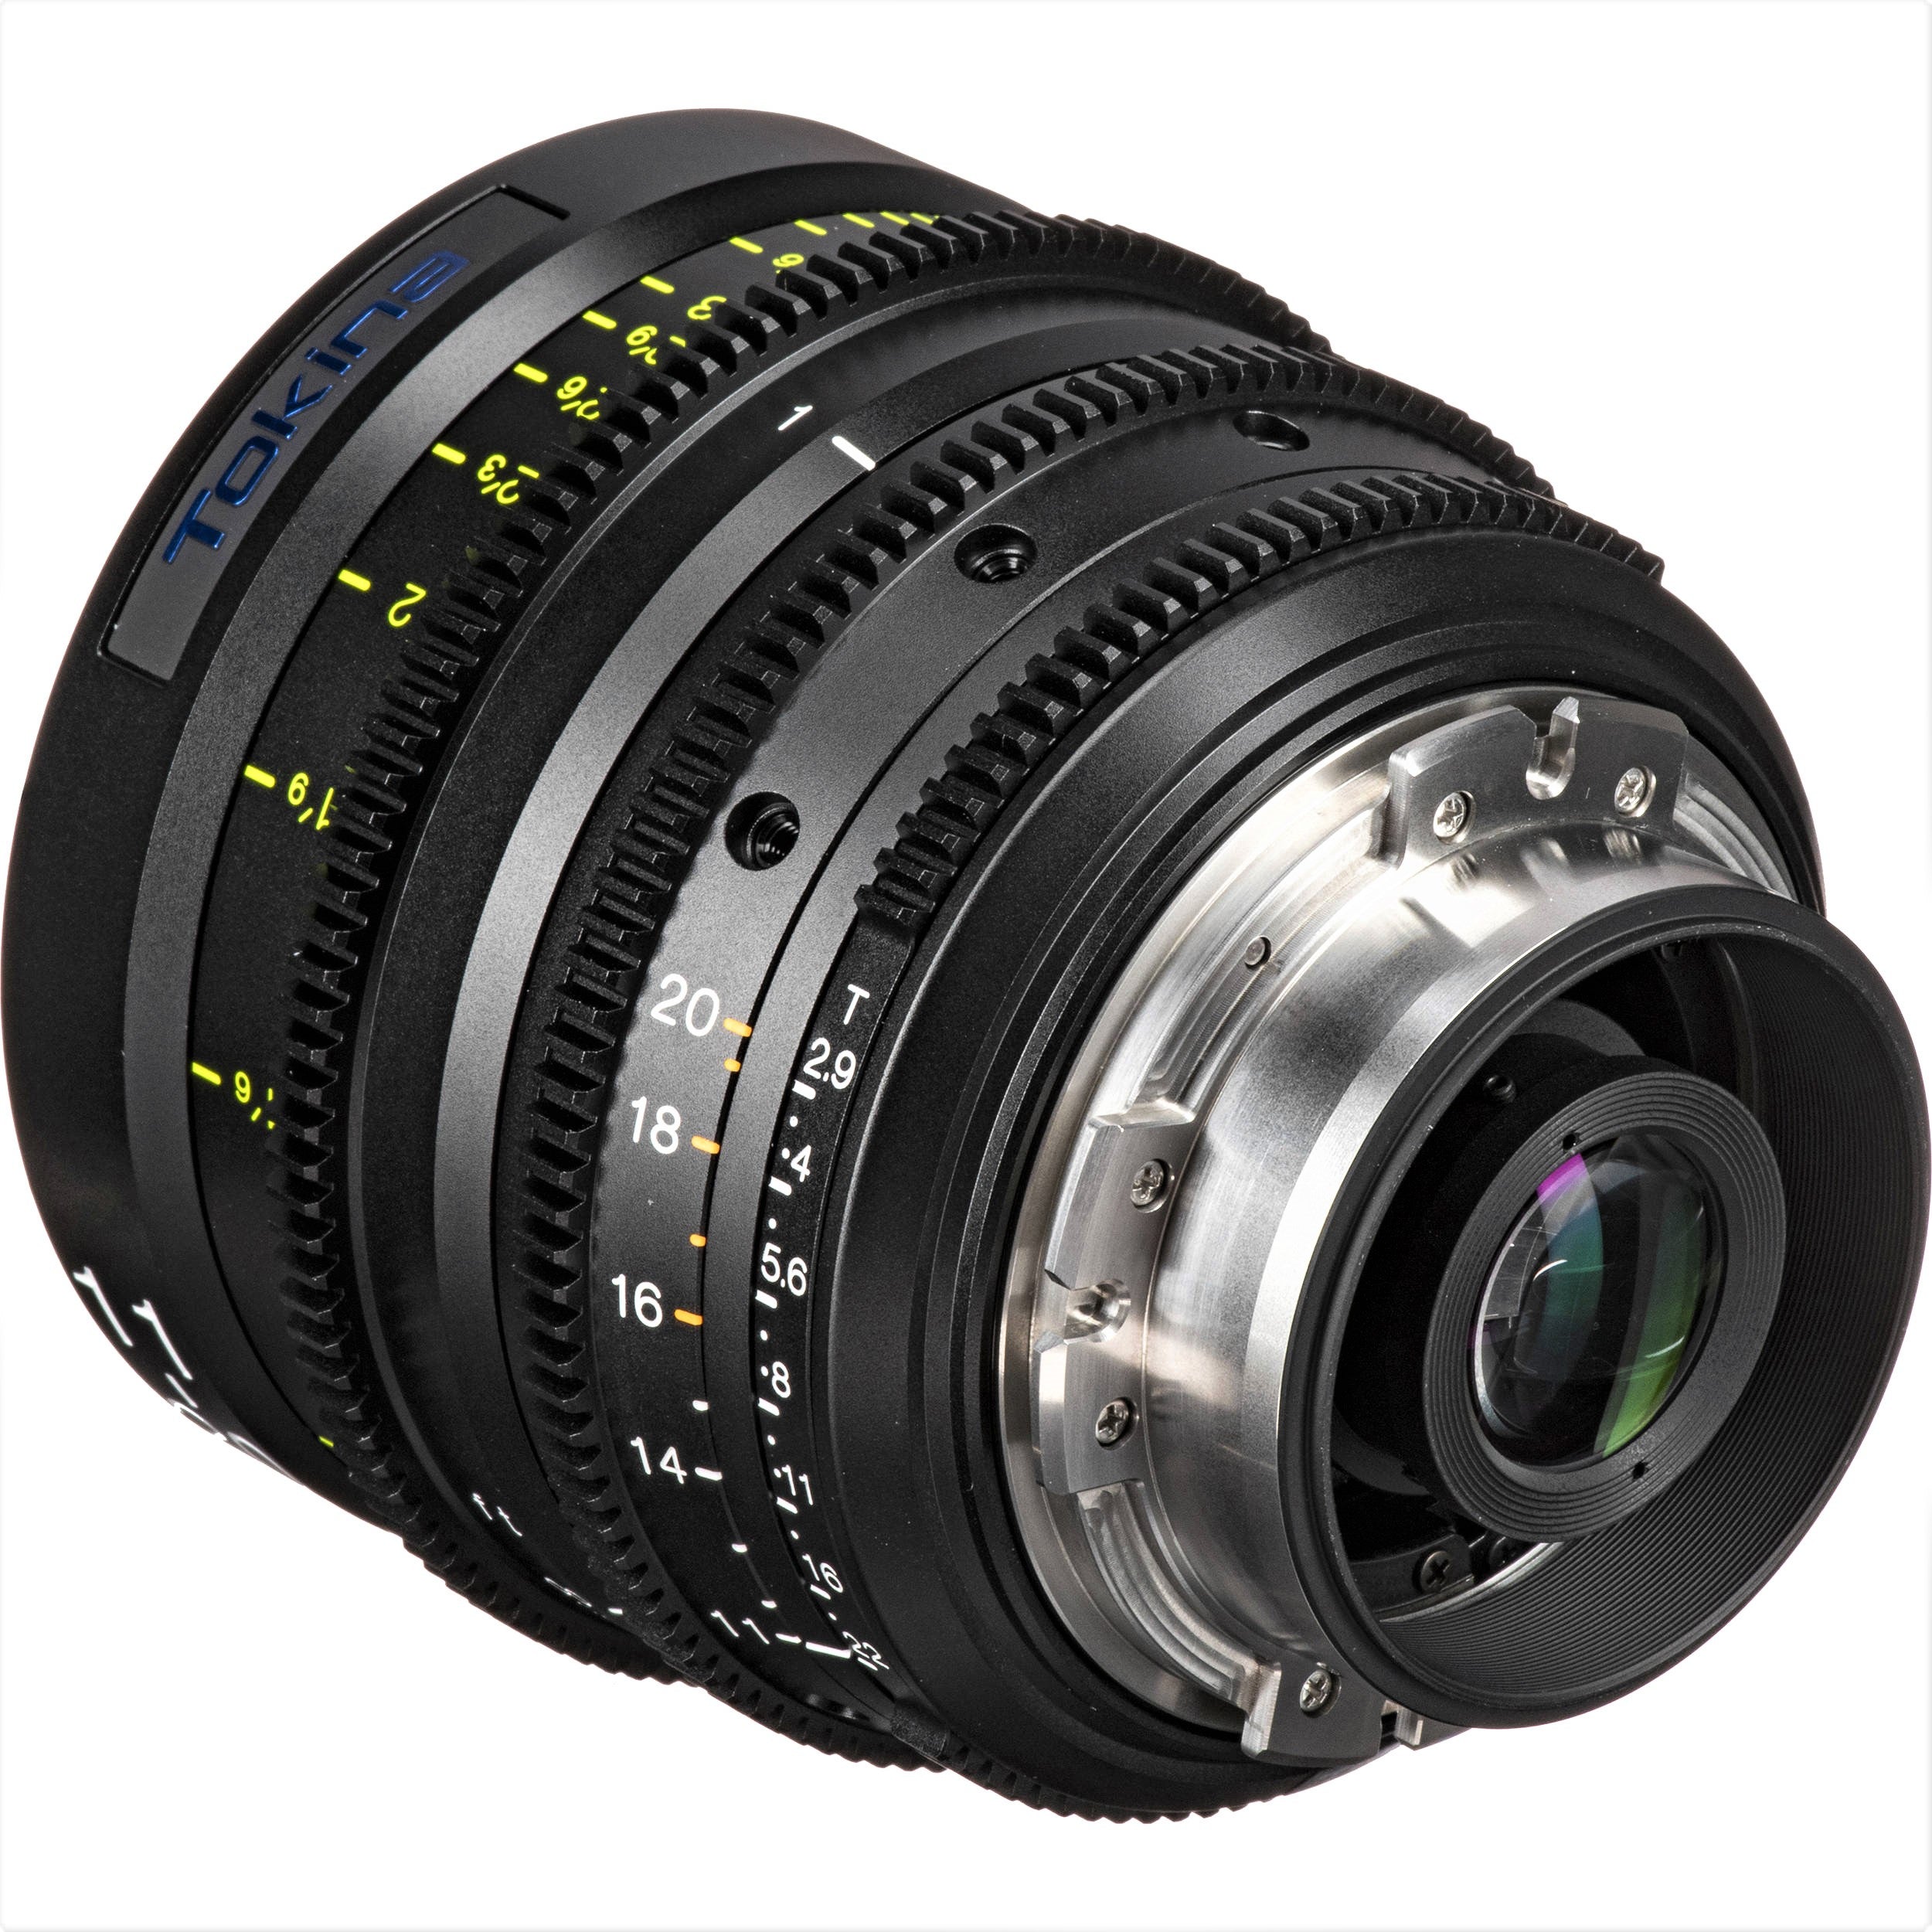 Tokina Cinema ATX 11-20mm T2.9 Wide-Angle Zoom Lens (MFT Mount)